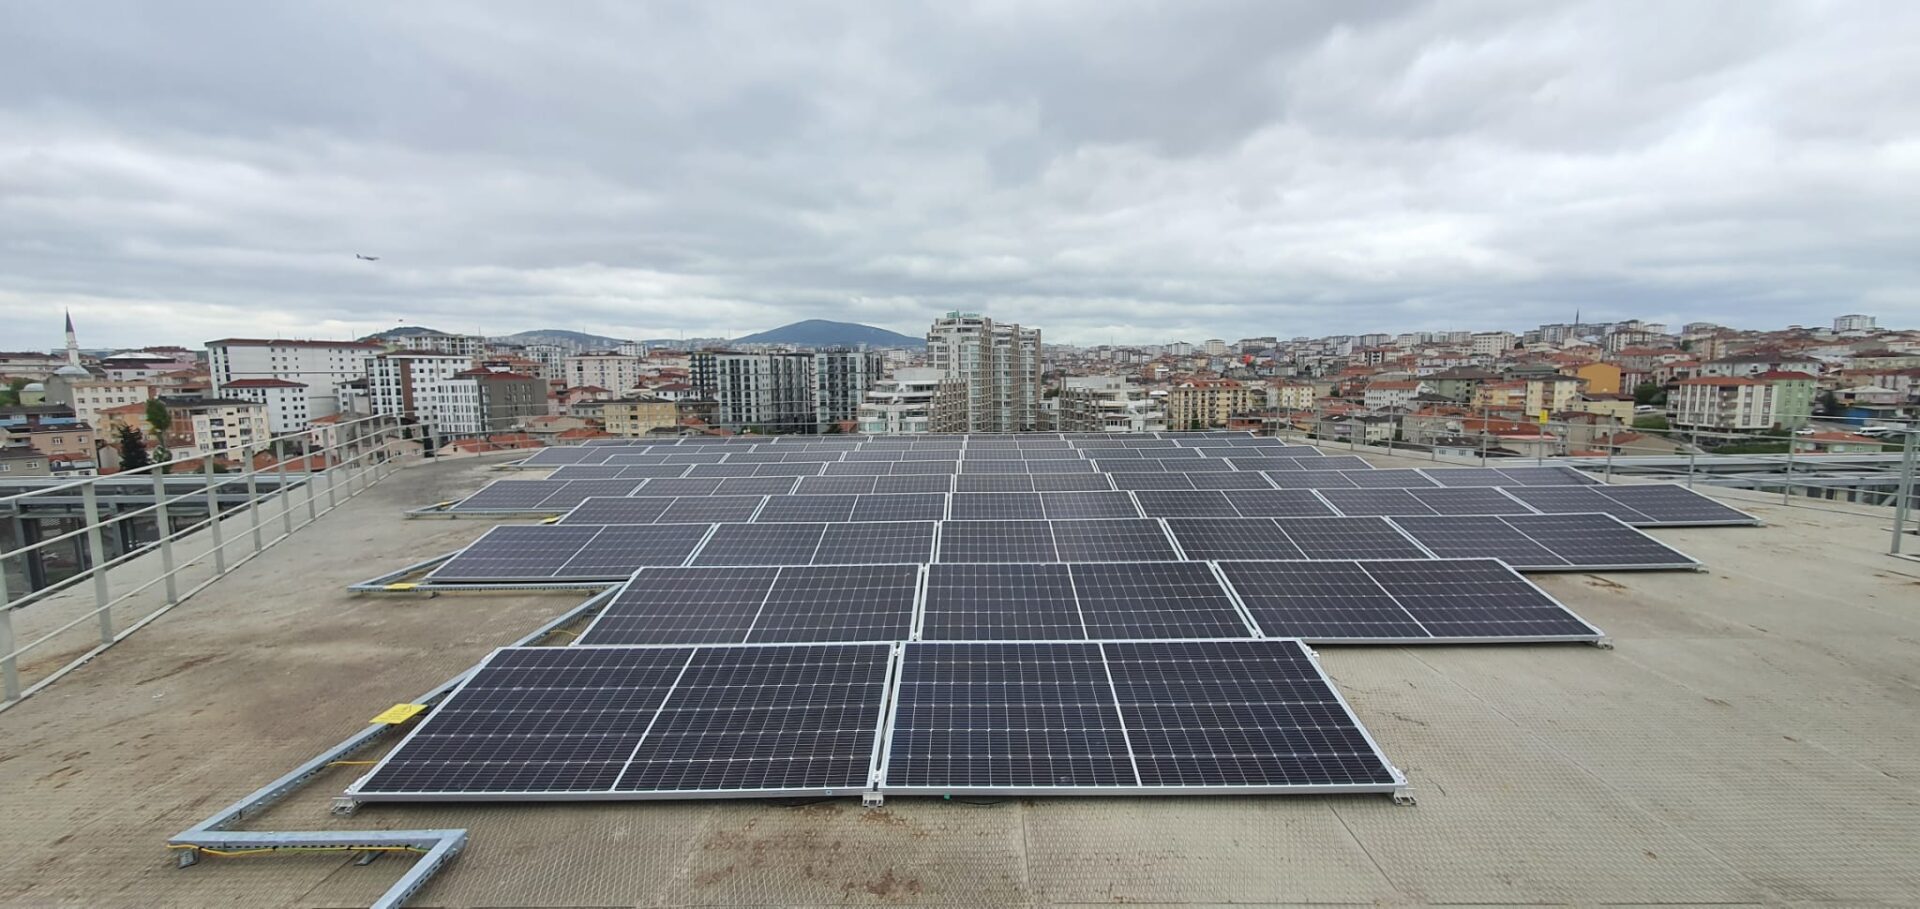 Garanti BBVA installa pannelli solari su edifici aziendali e bancomat